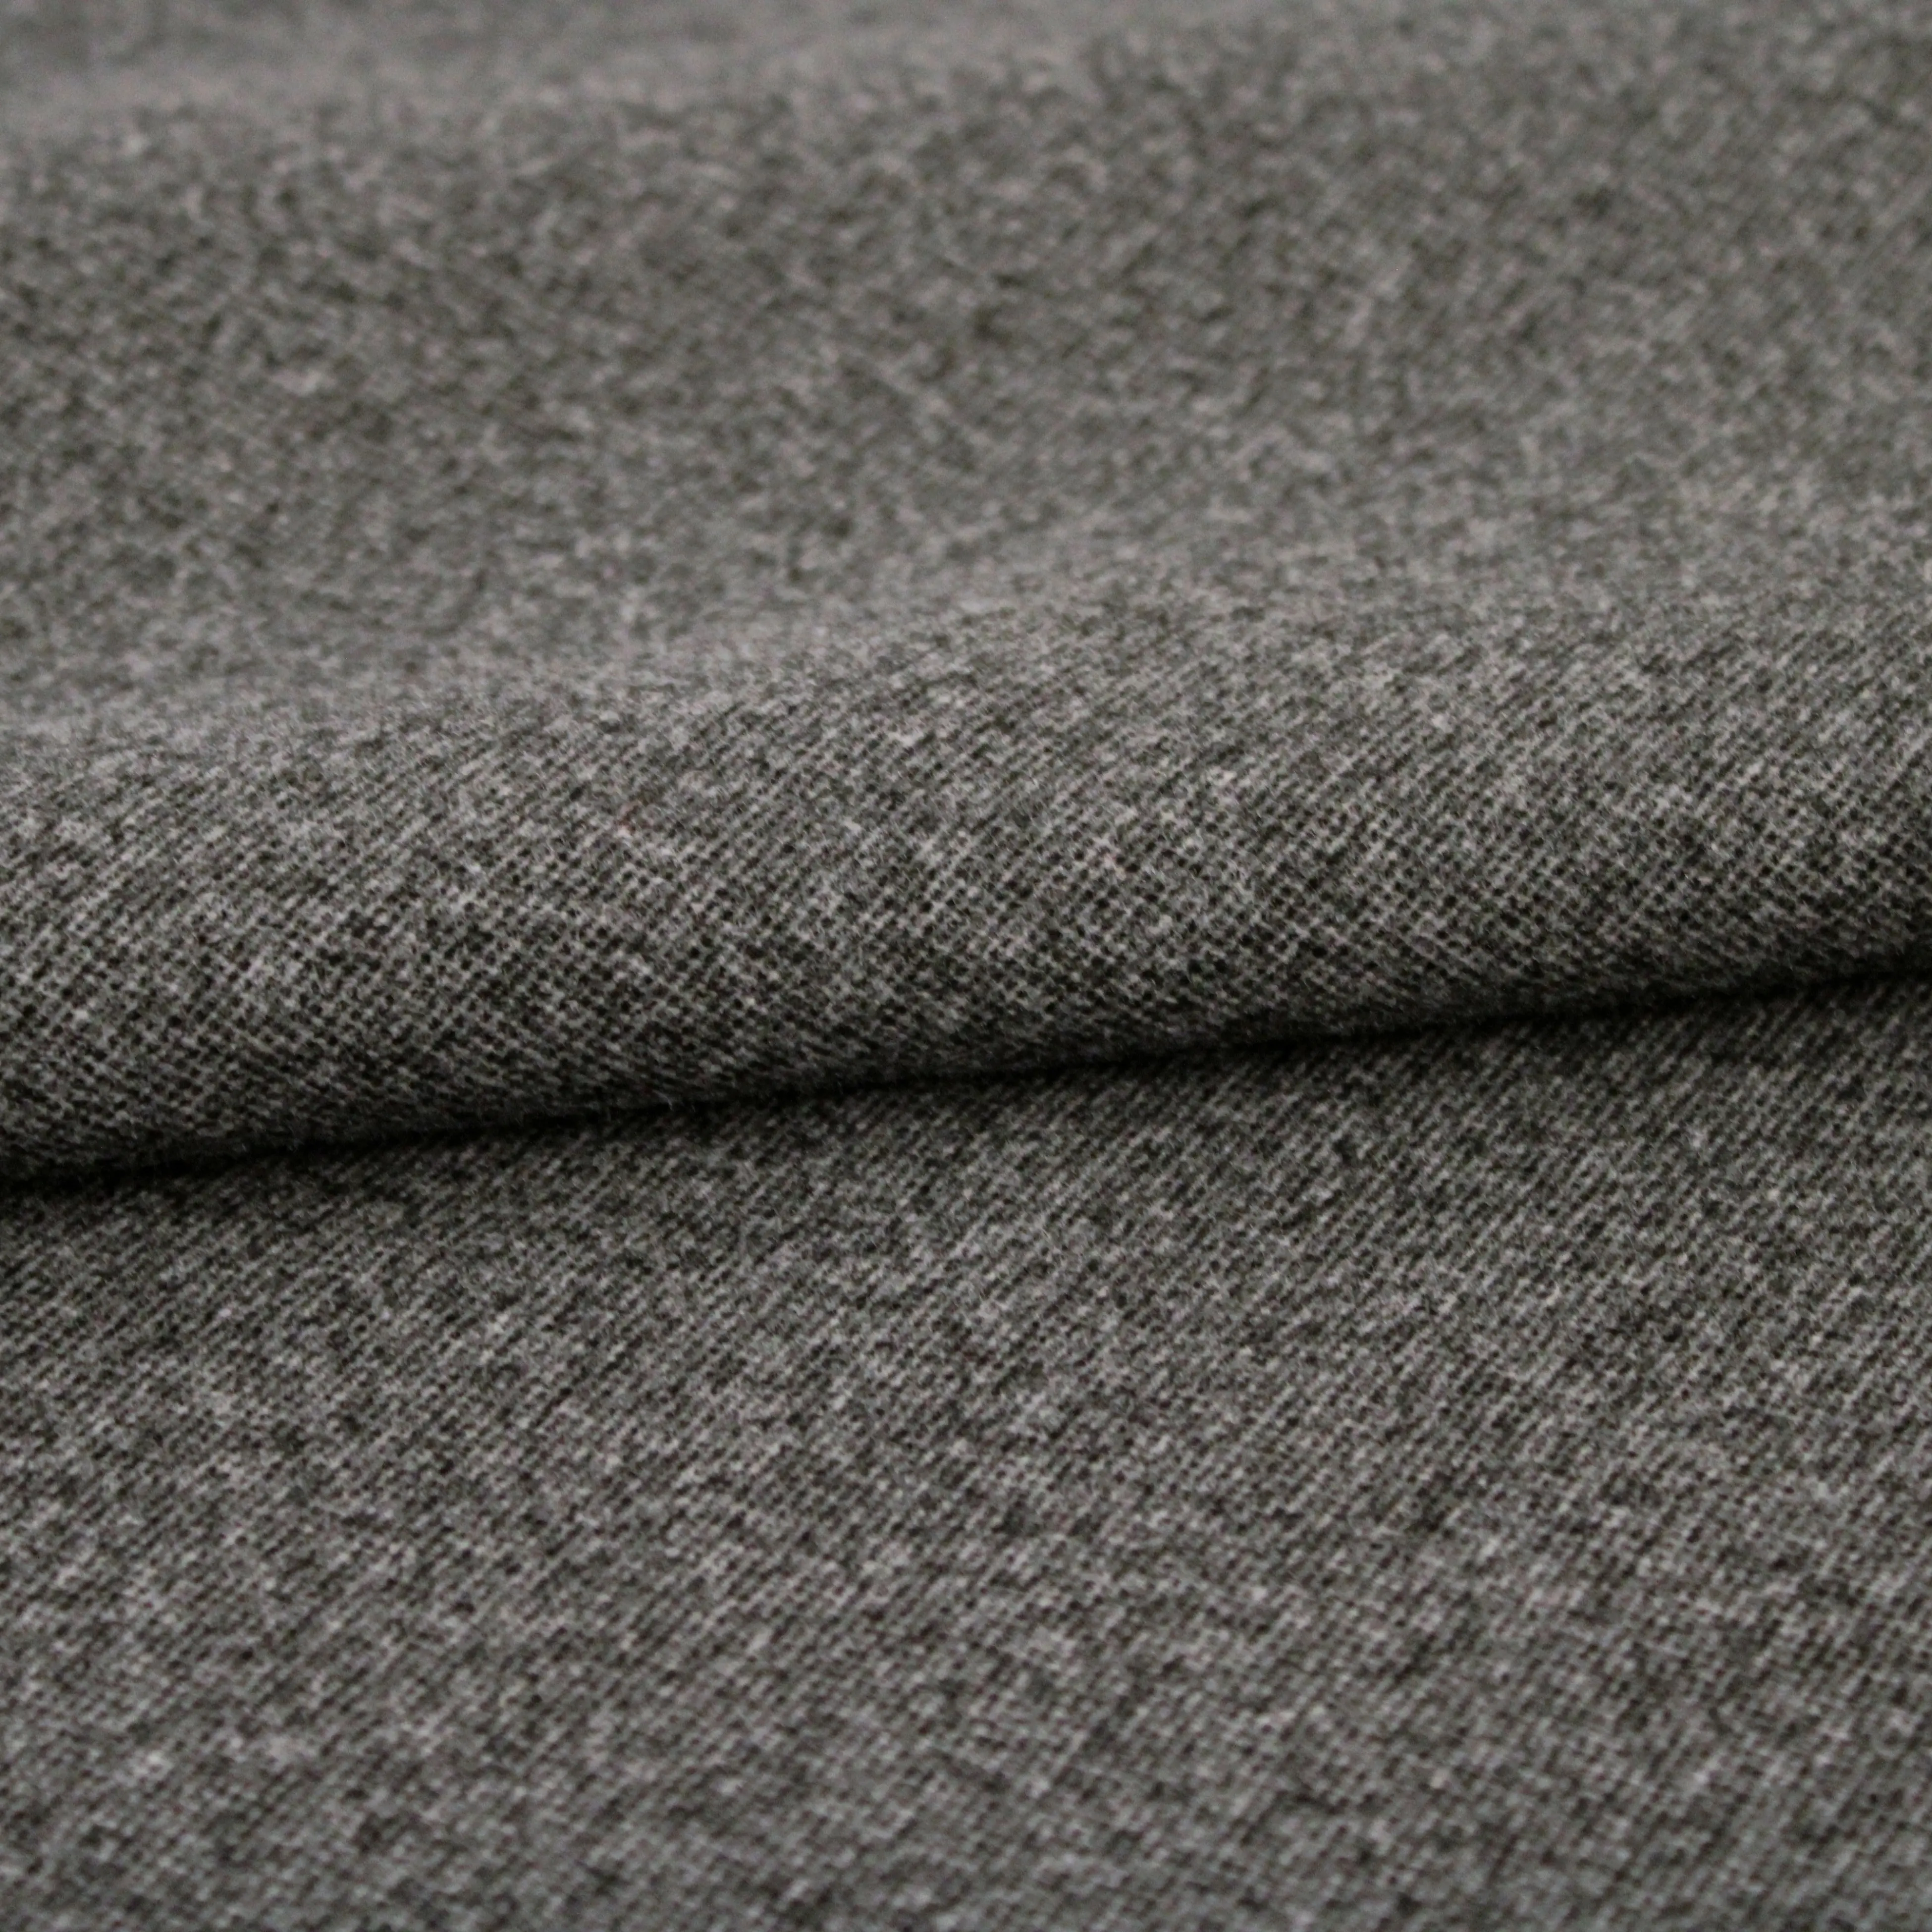 Herstellung Hochwertige kostenlose Probe Günstige Stoffe Double Faced Polyester Stoffe für Mantel Anzug Sofa bezug